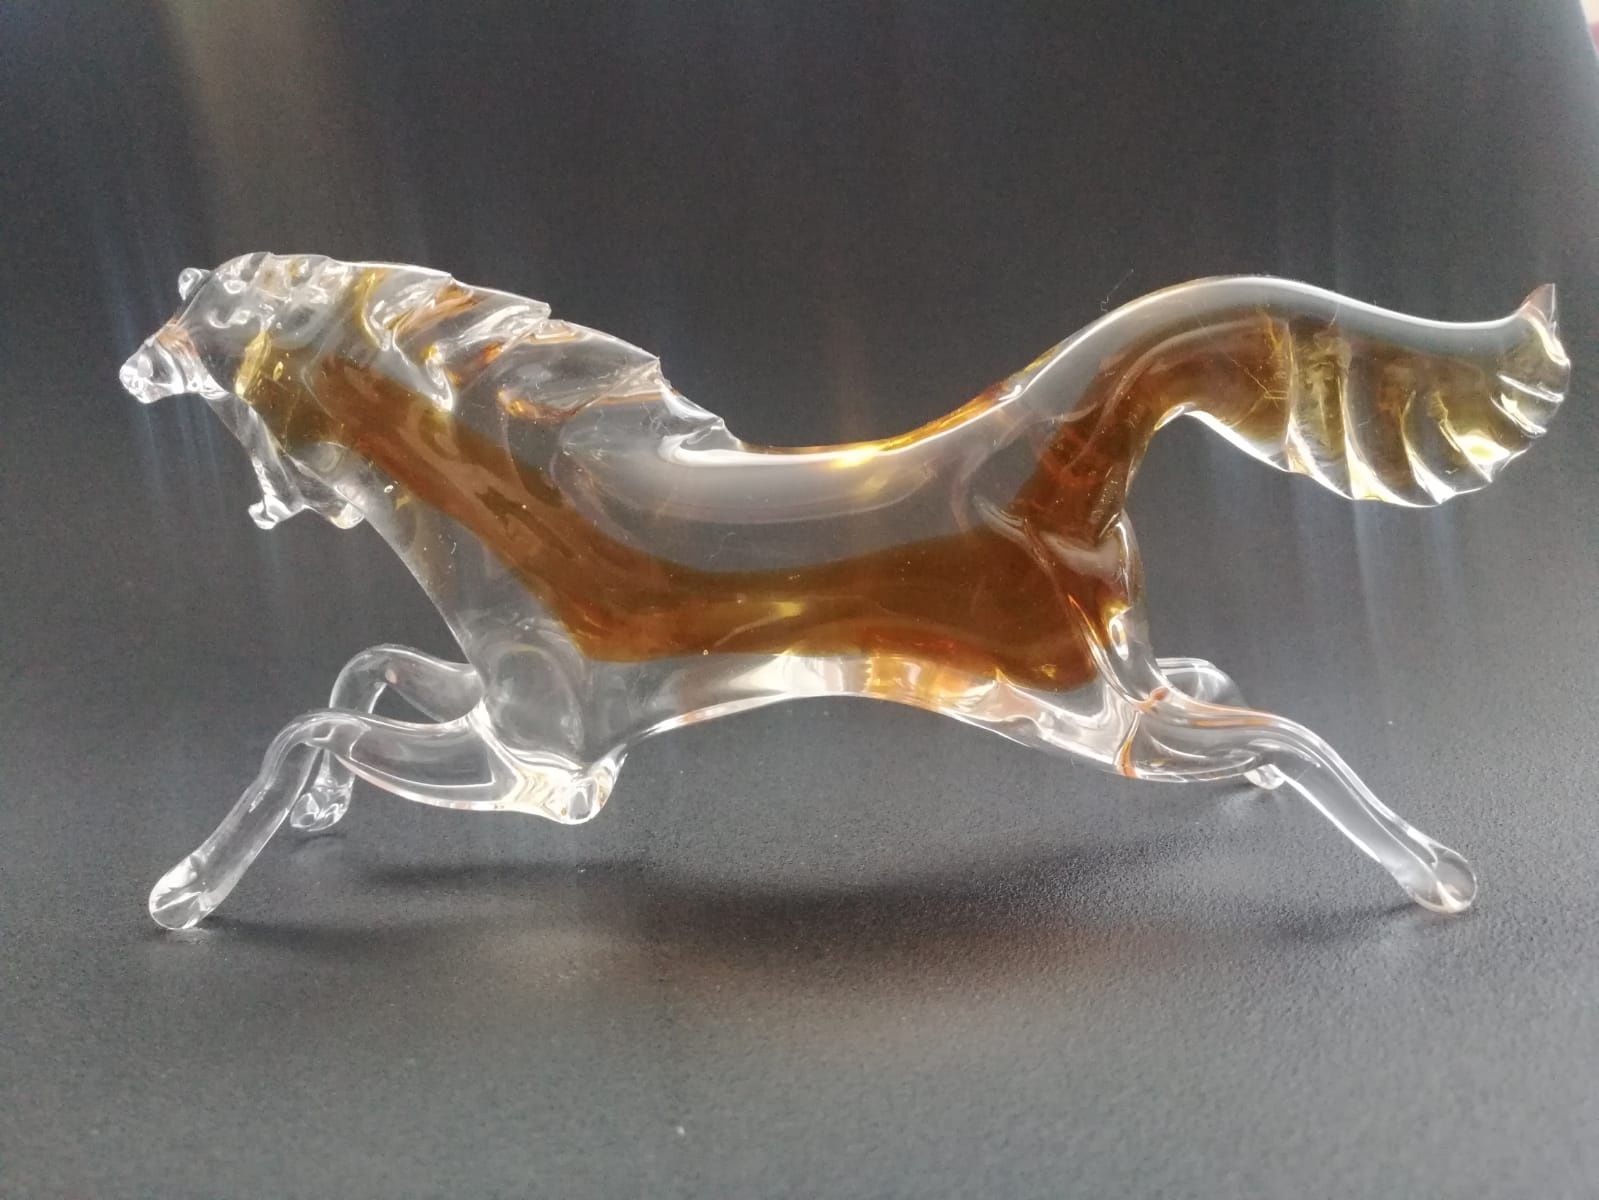 Szklana figurka konia szkło Murano Włochy lata 70 vintage retro PRL